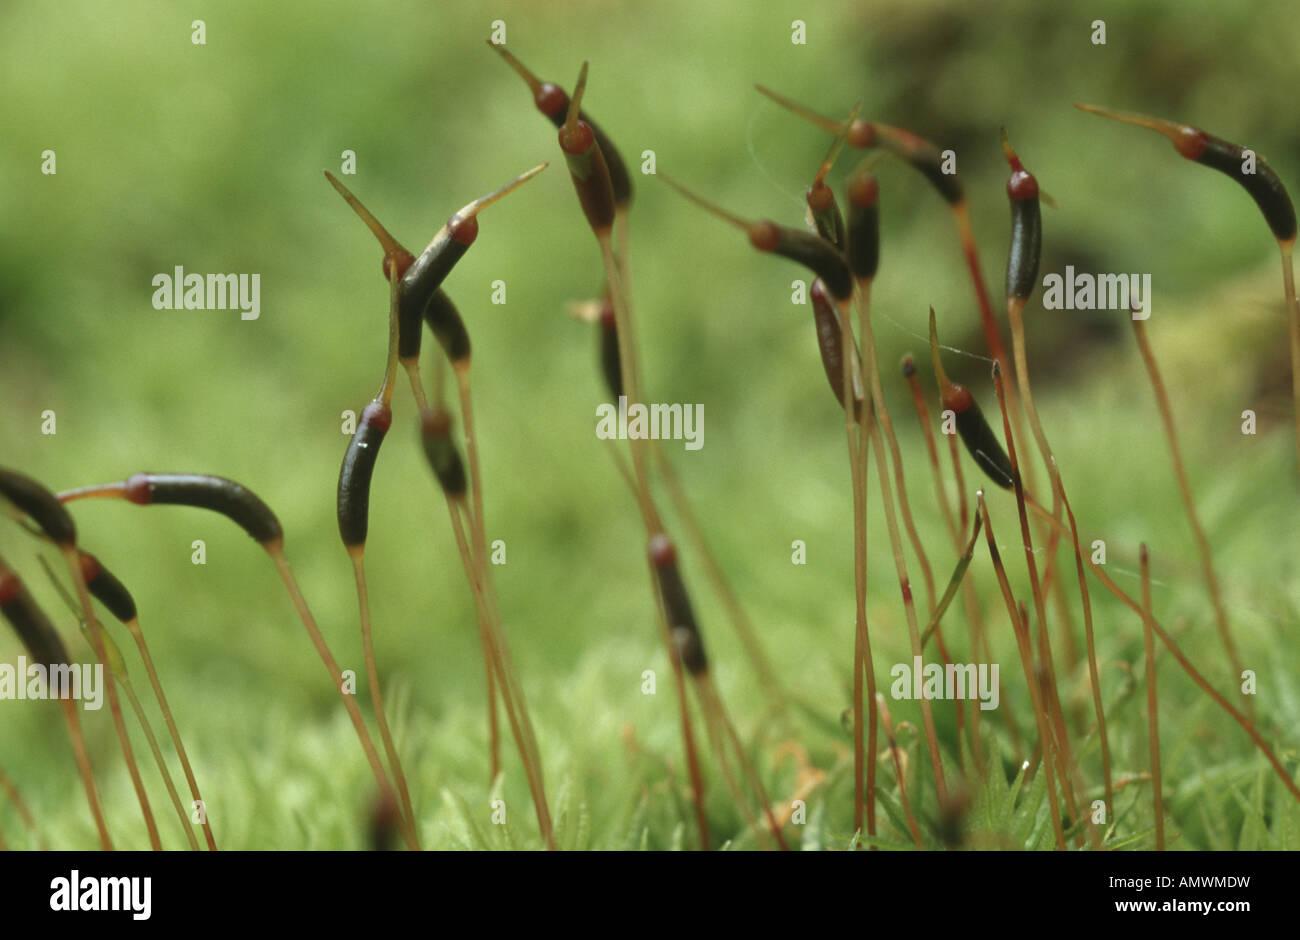 brachythecium-moss-brachythecium-velutinum-sporophytes-AMWMDW.jpg